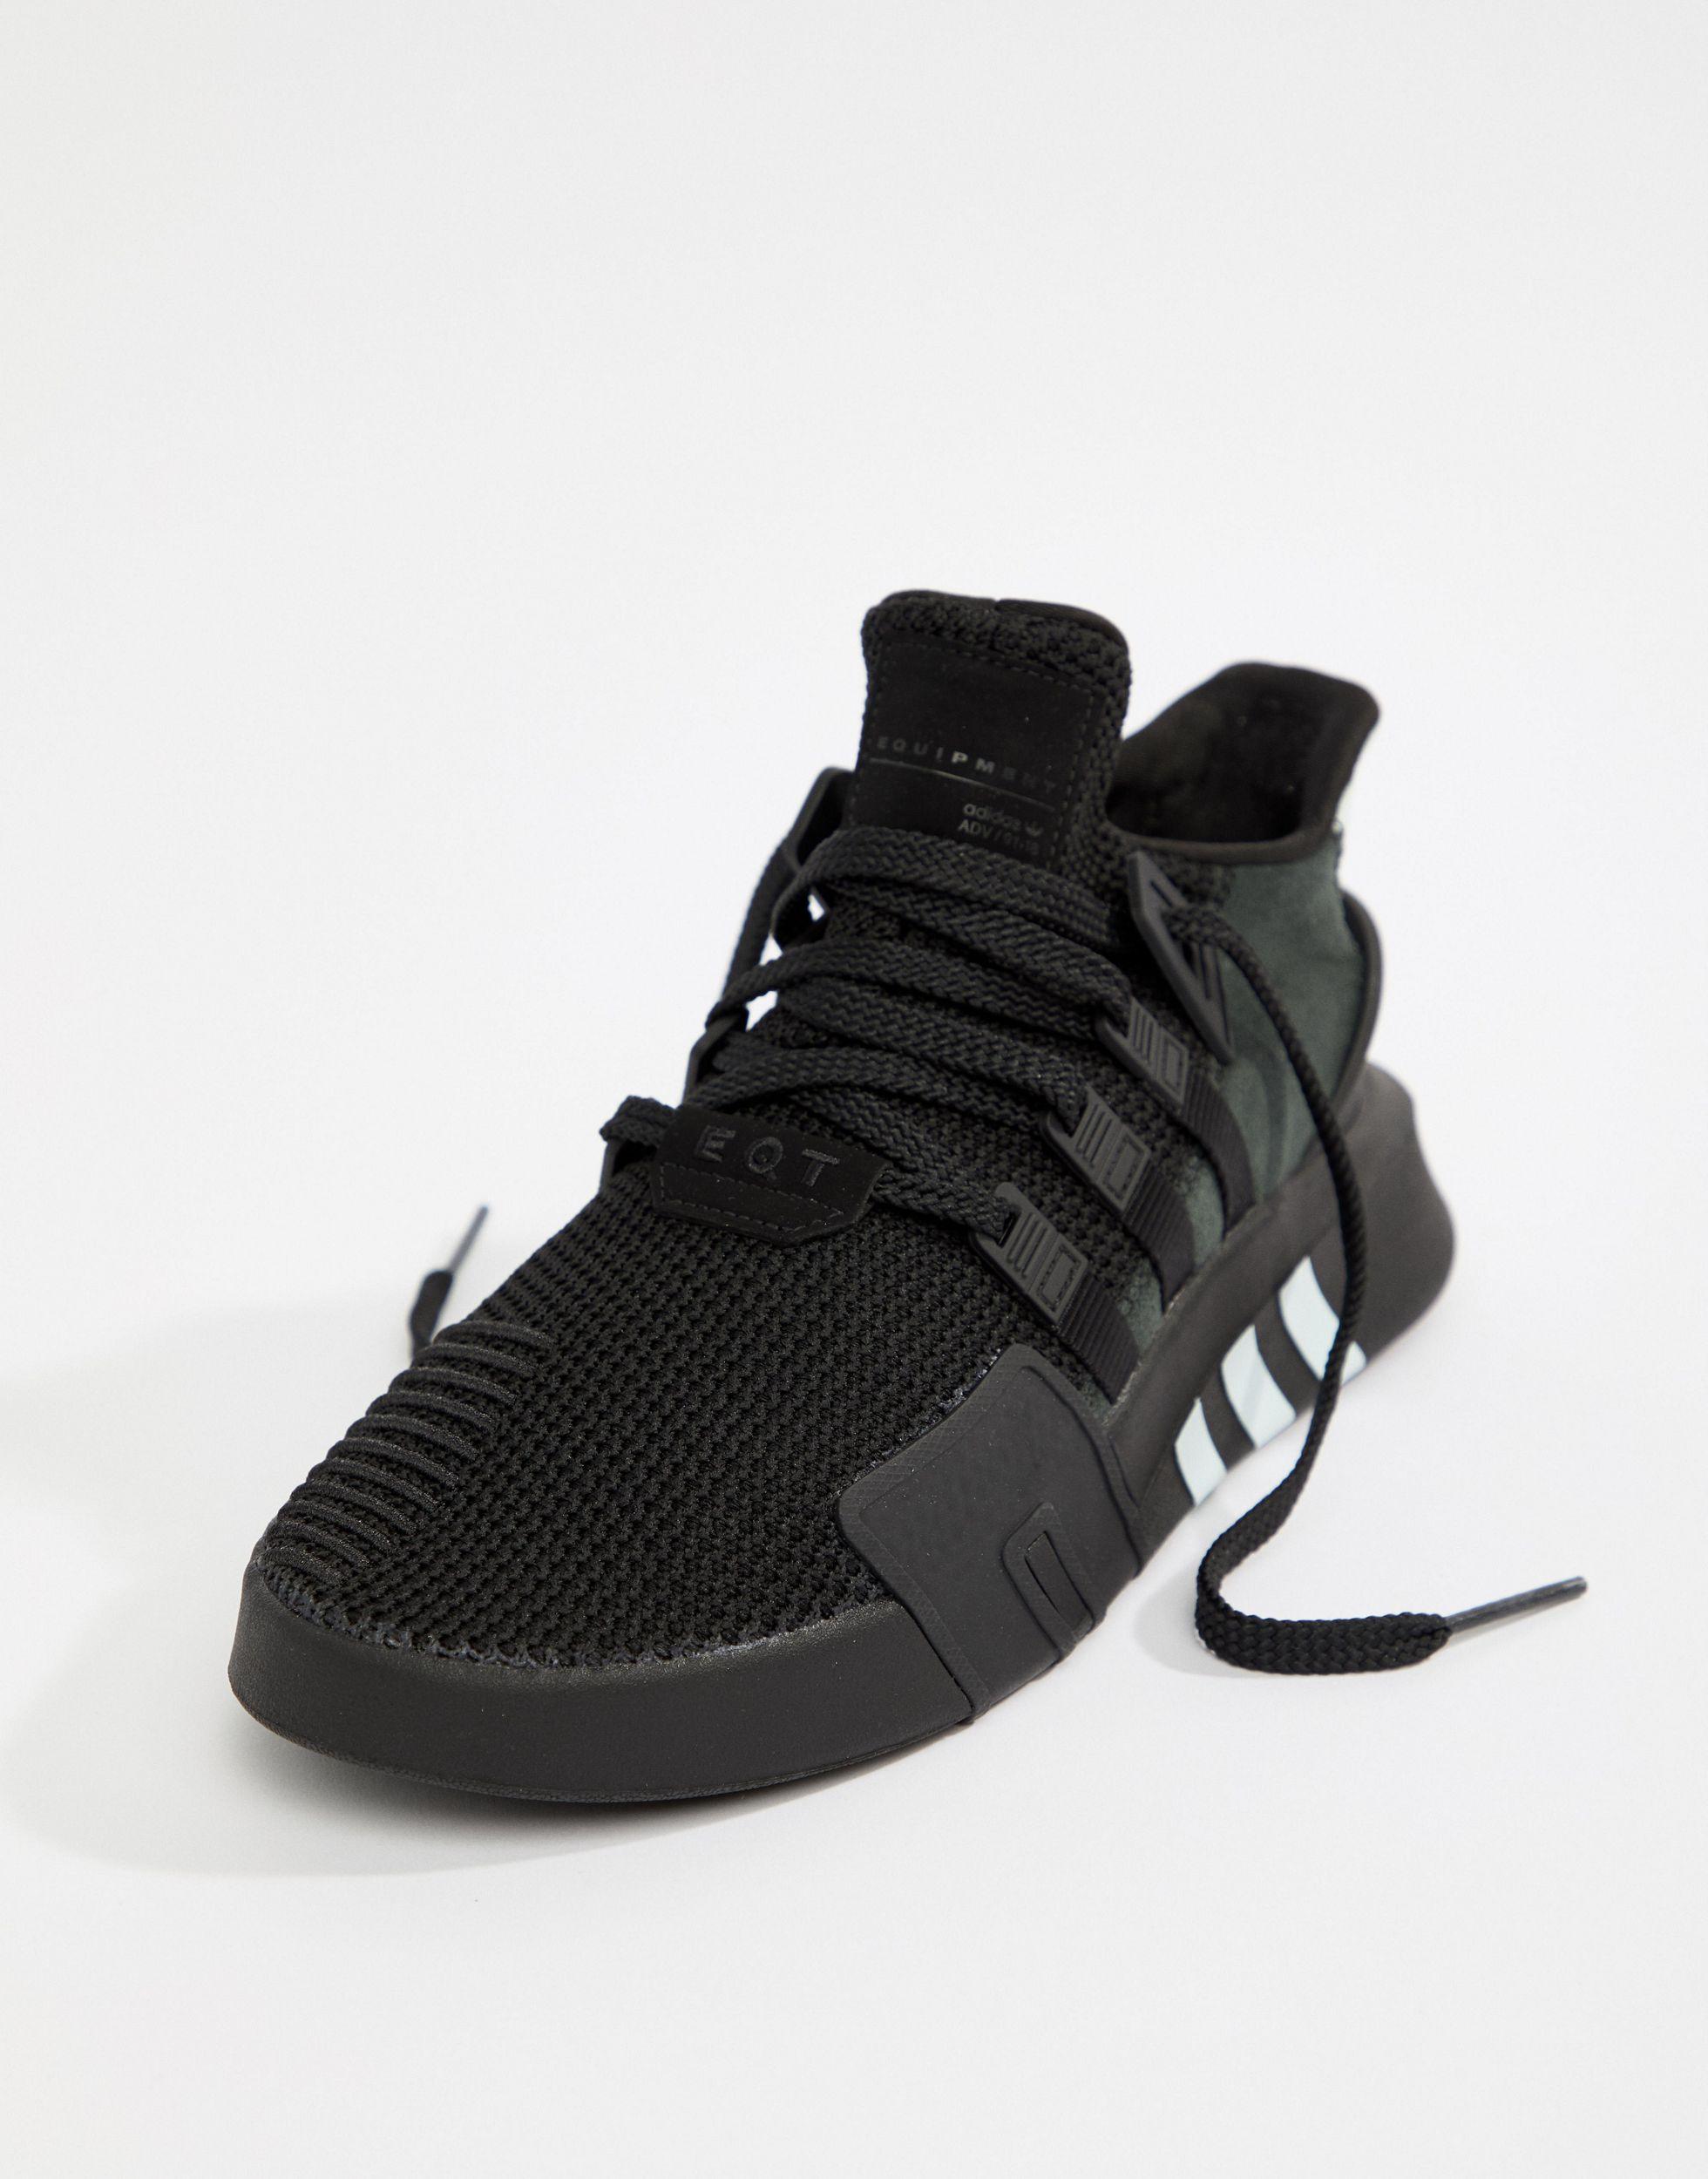 Adidas Originals Eqt Bask Adv Sneakers In Black Aq1013 Outlet 100%, 50% OFF  | krcuganda.org